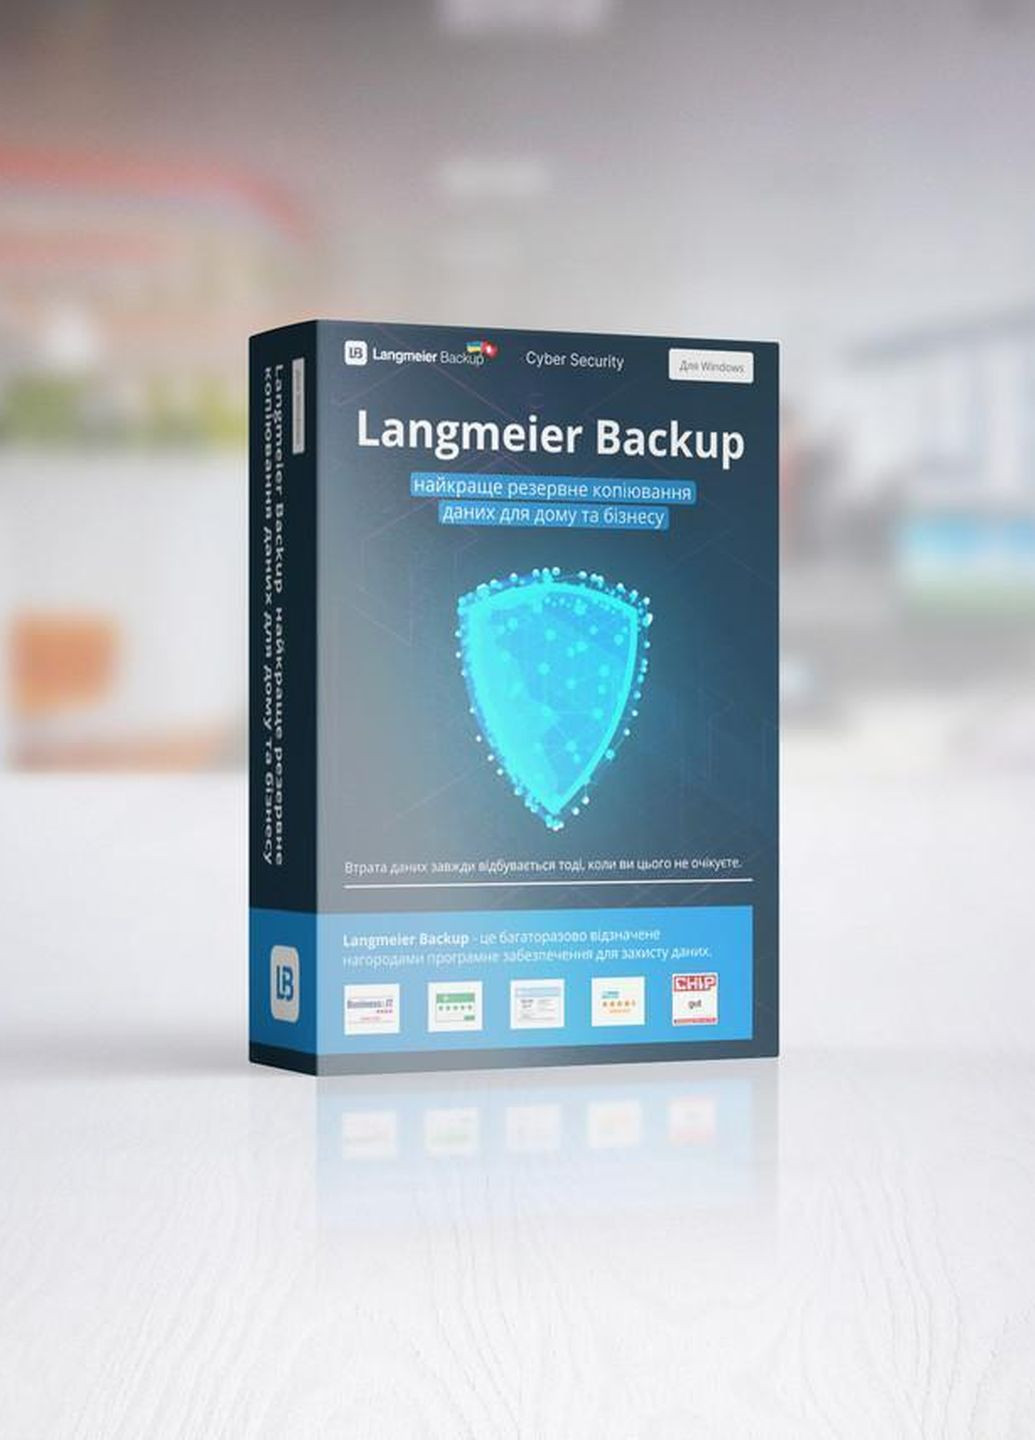 Langmeier Backup Essentials - резервное копирование файлов и папок. Бессрочная лицензия (3 г. обслуживания) Langmeier Software (271518290)